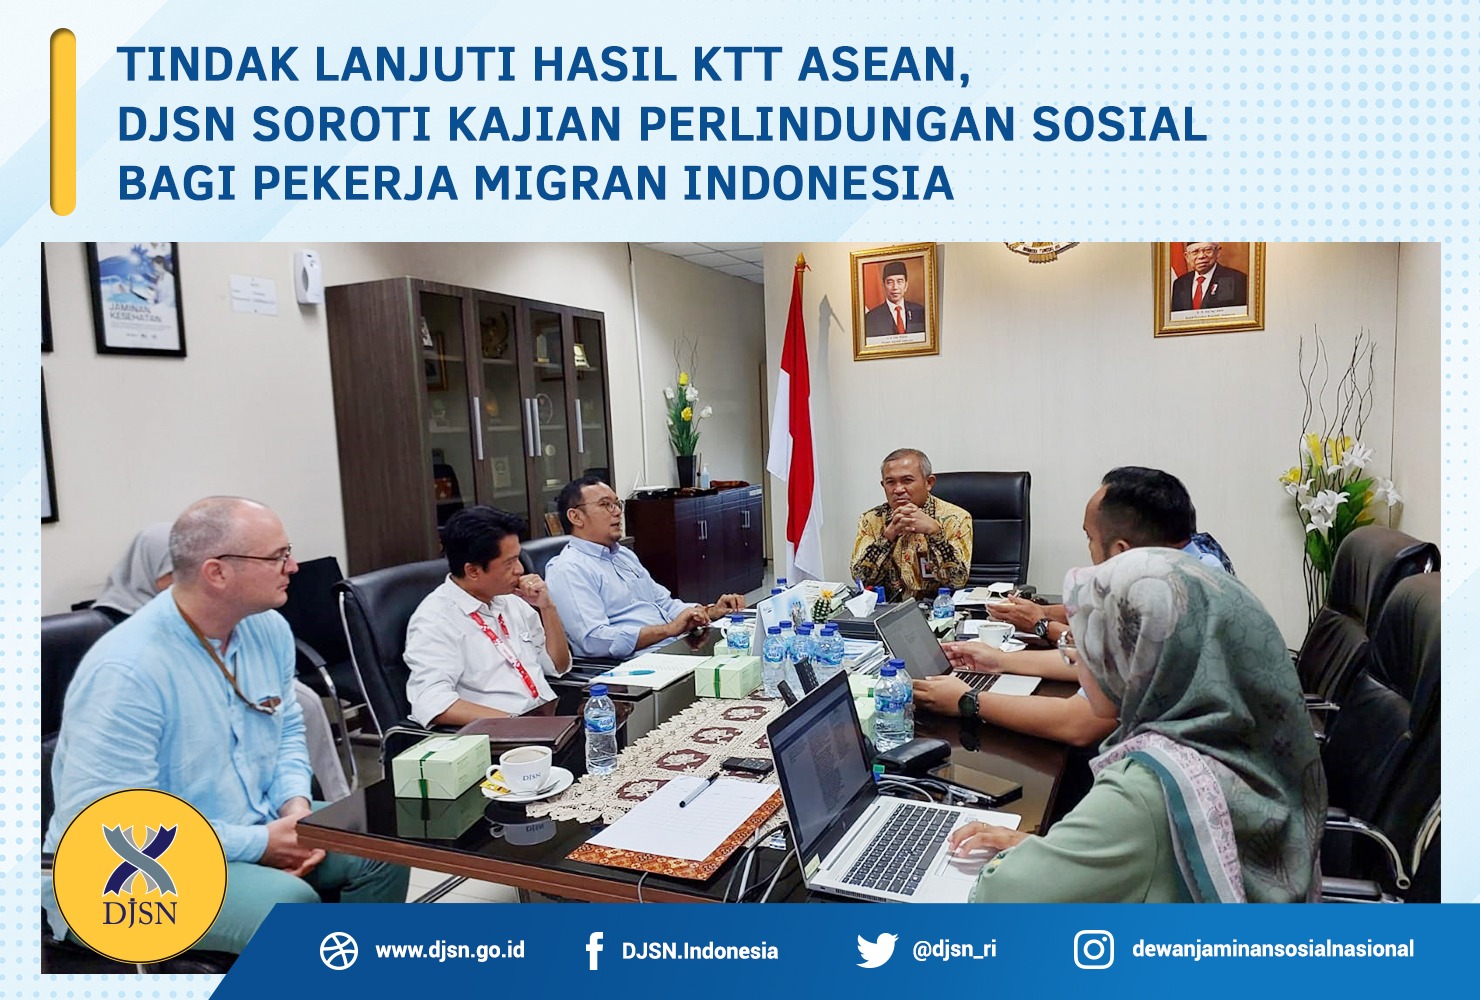 Tindak Lanjuti Hasil KTT ASEAN, DJSN Soroti Kajian Perlindungan Sosial Bagi Pekerja Migran Indonesia